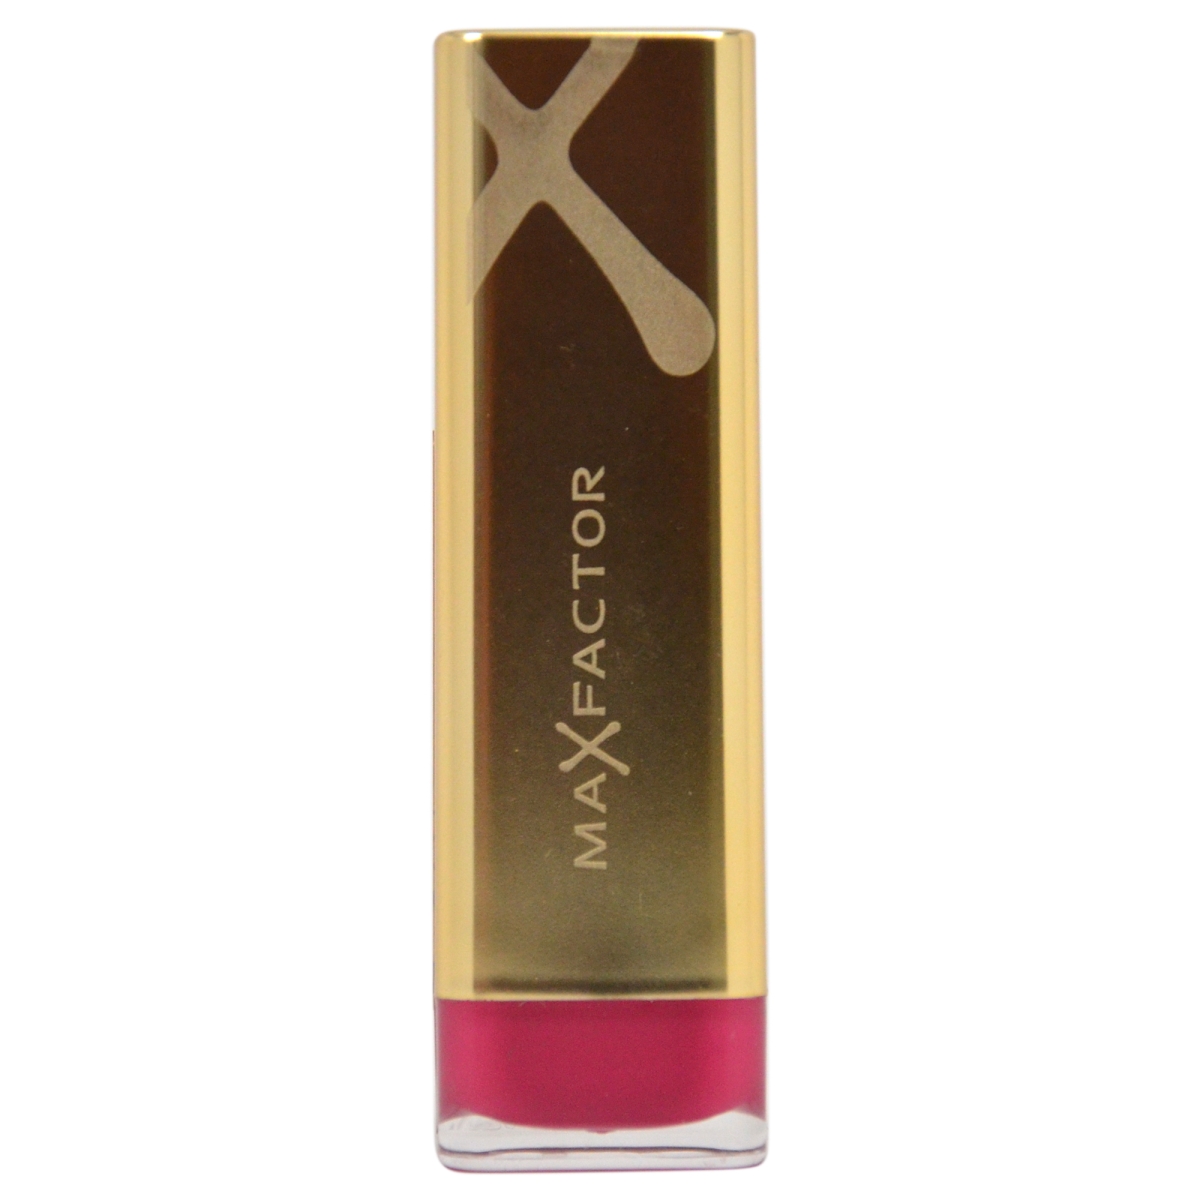 W-c-3598 No. 665 Colour Elixir Pomegranate Lipstick For Women